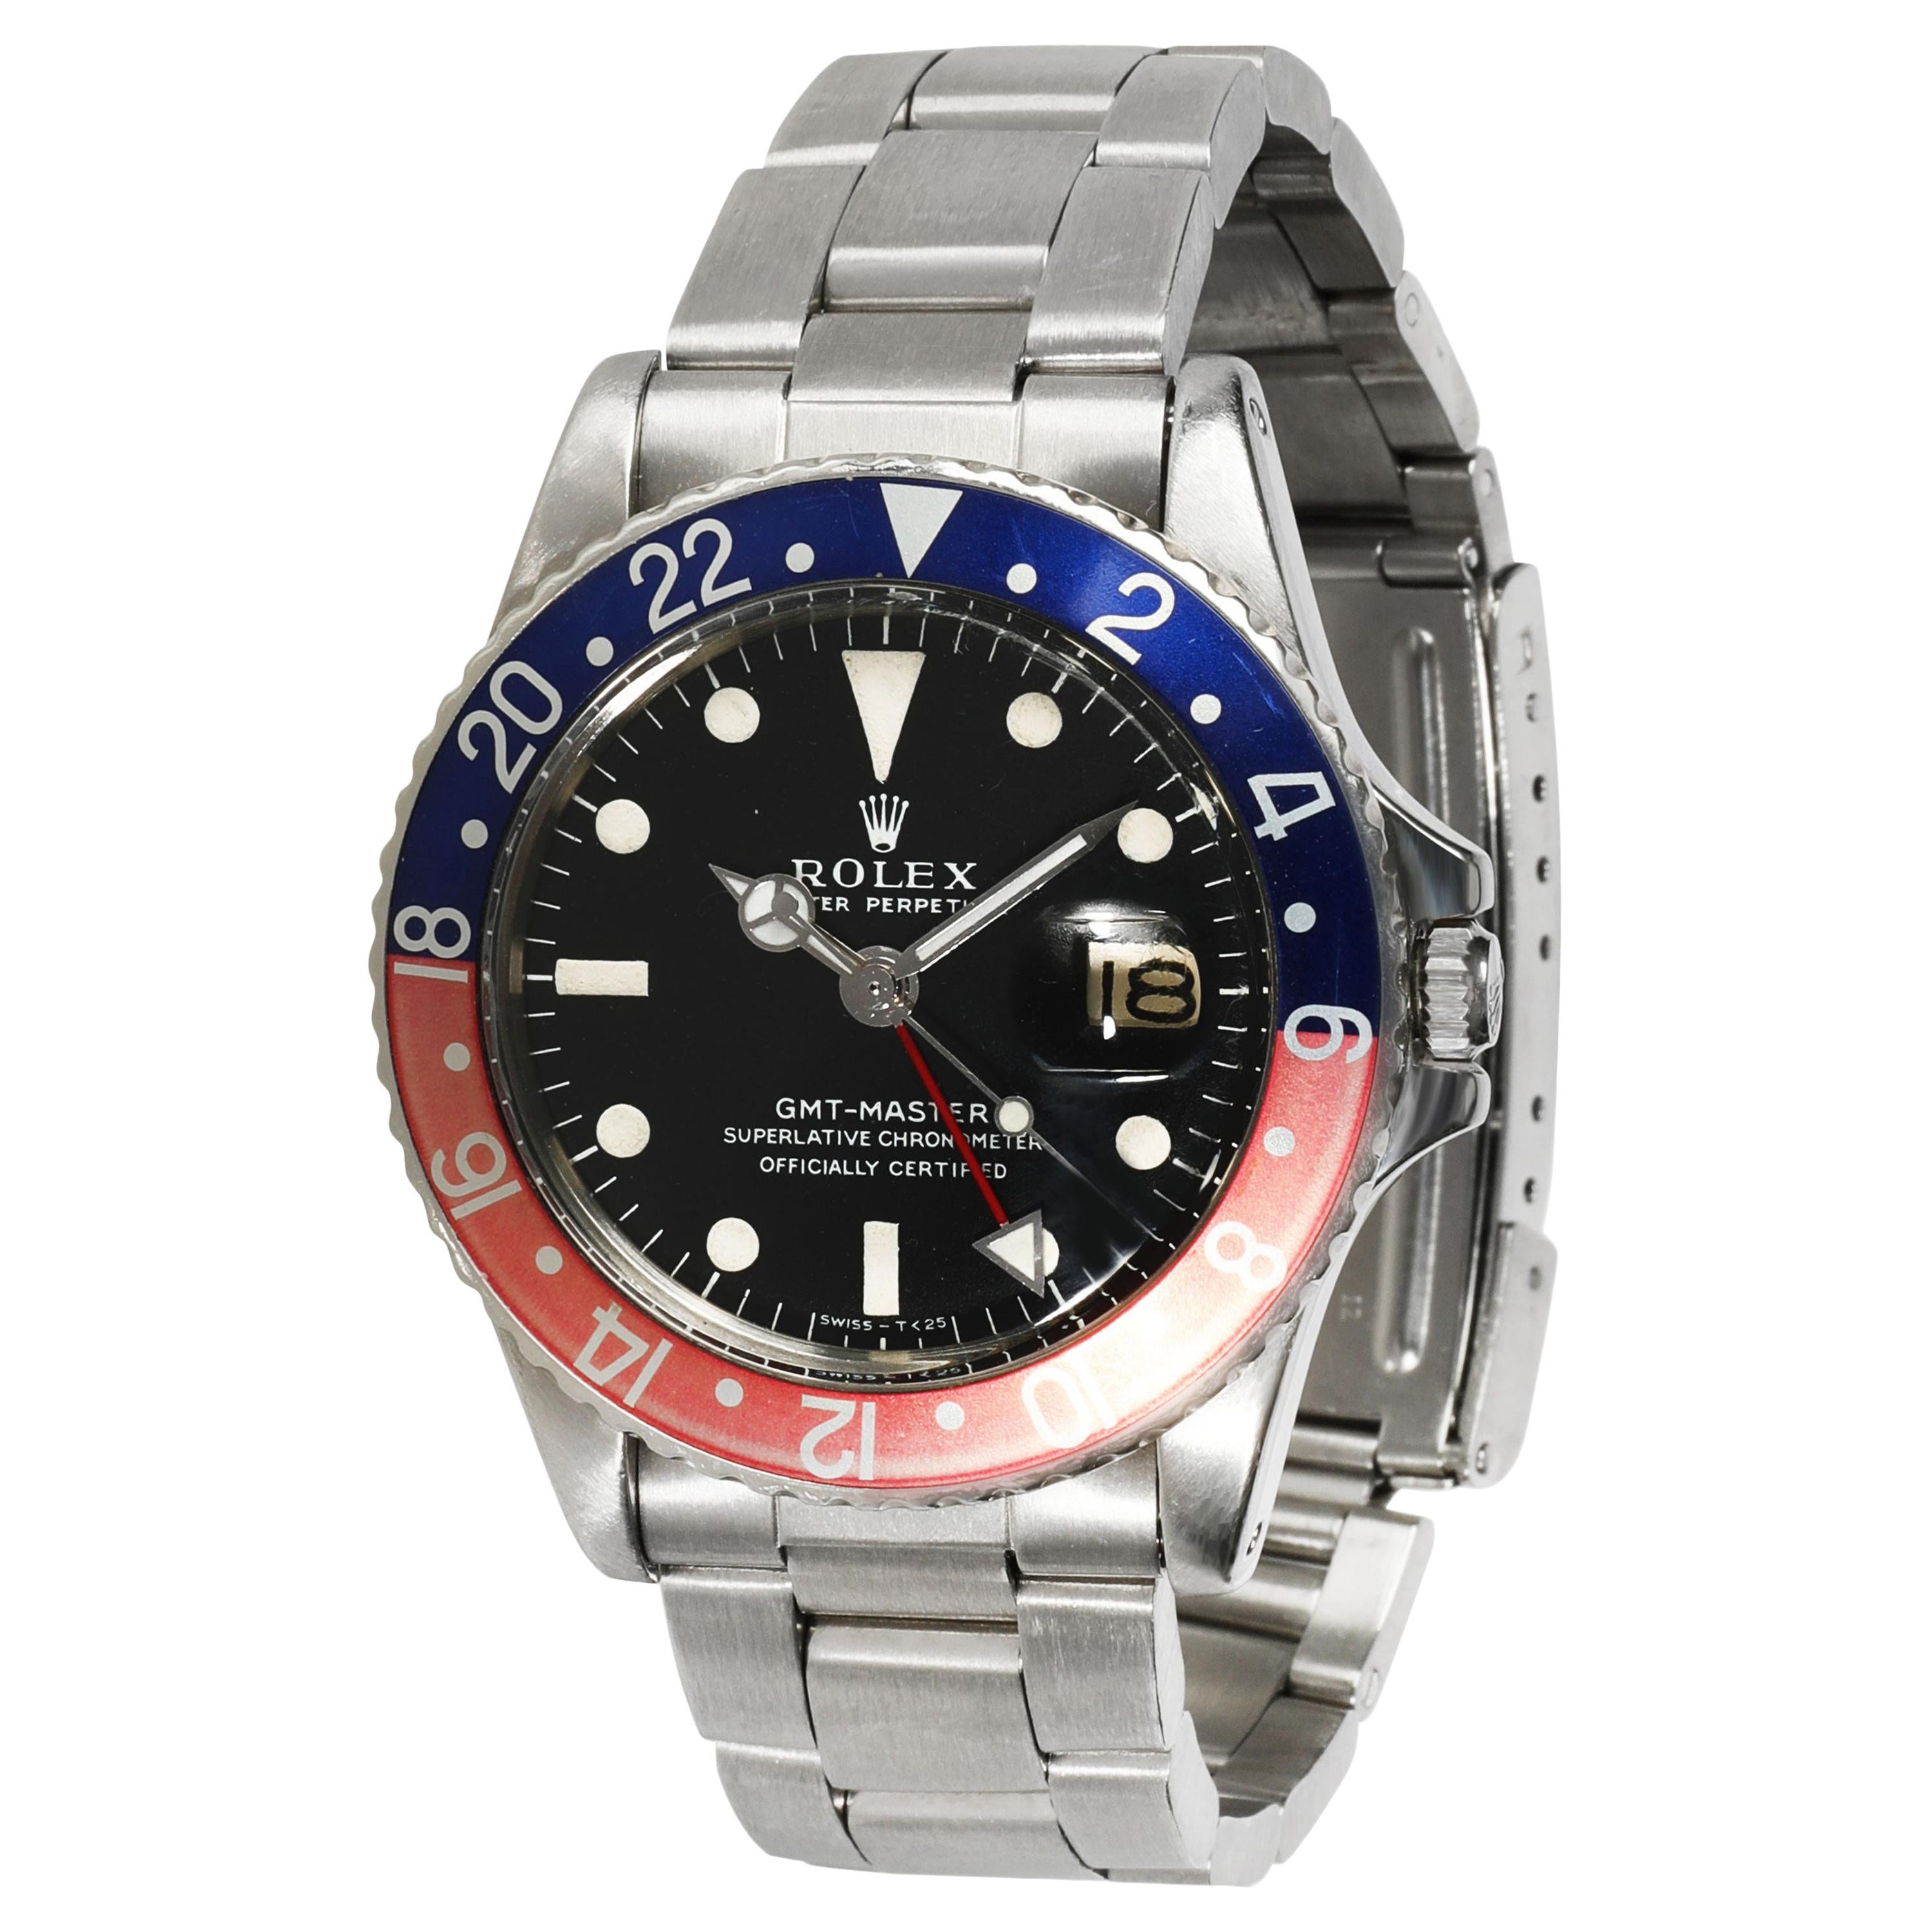 Rolex GMT-Master 1675 Men's Watch in Stainless Steel